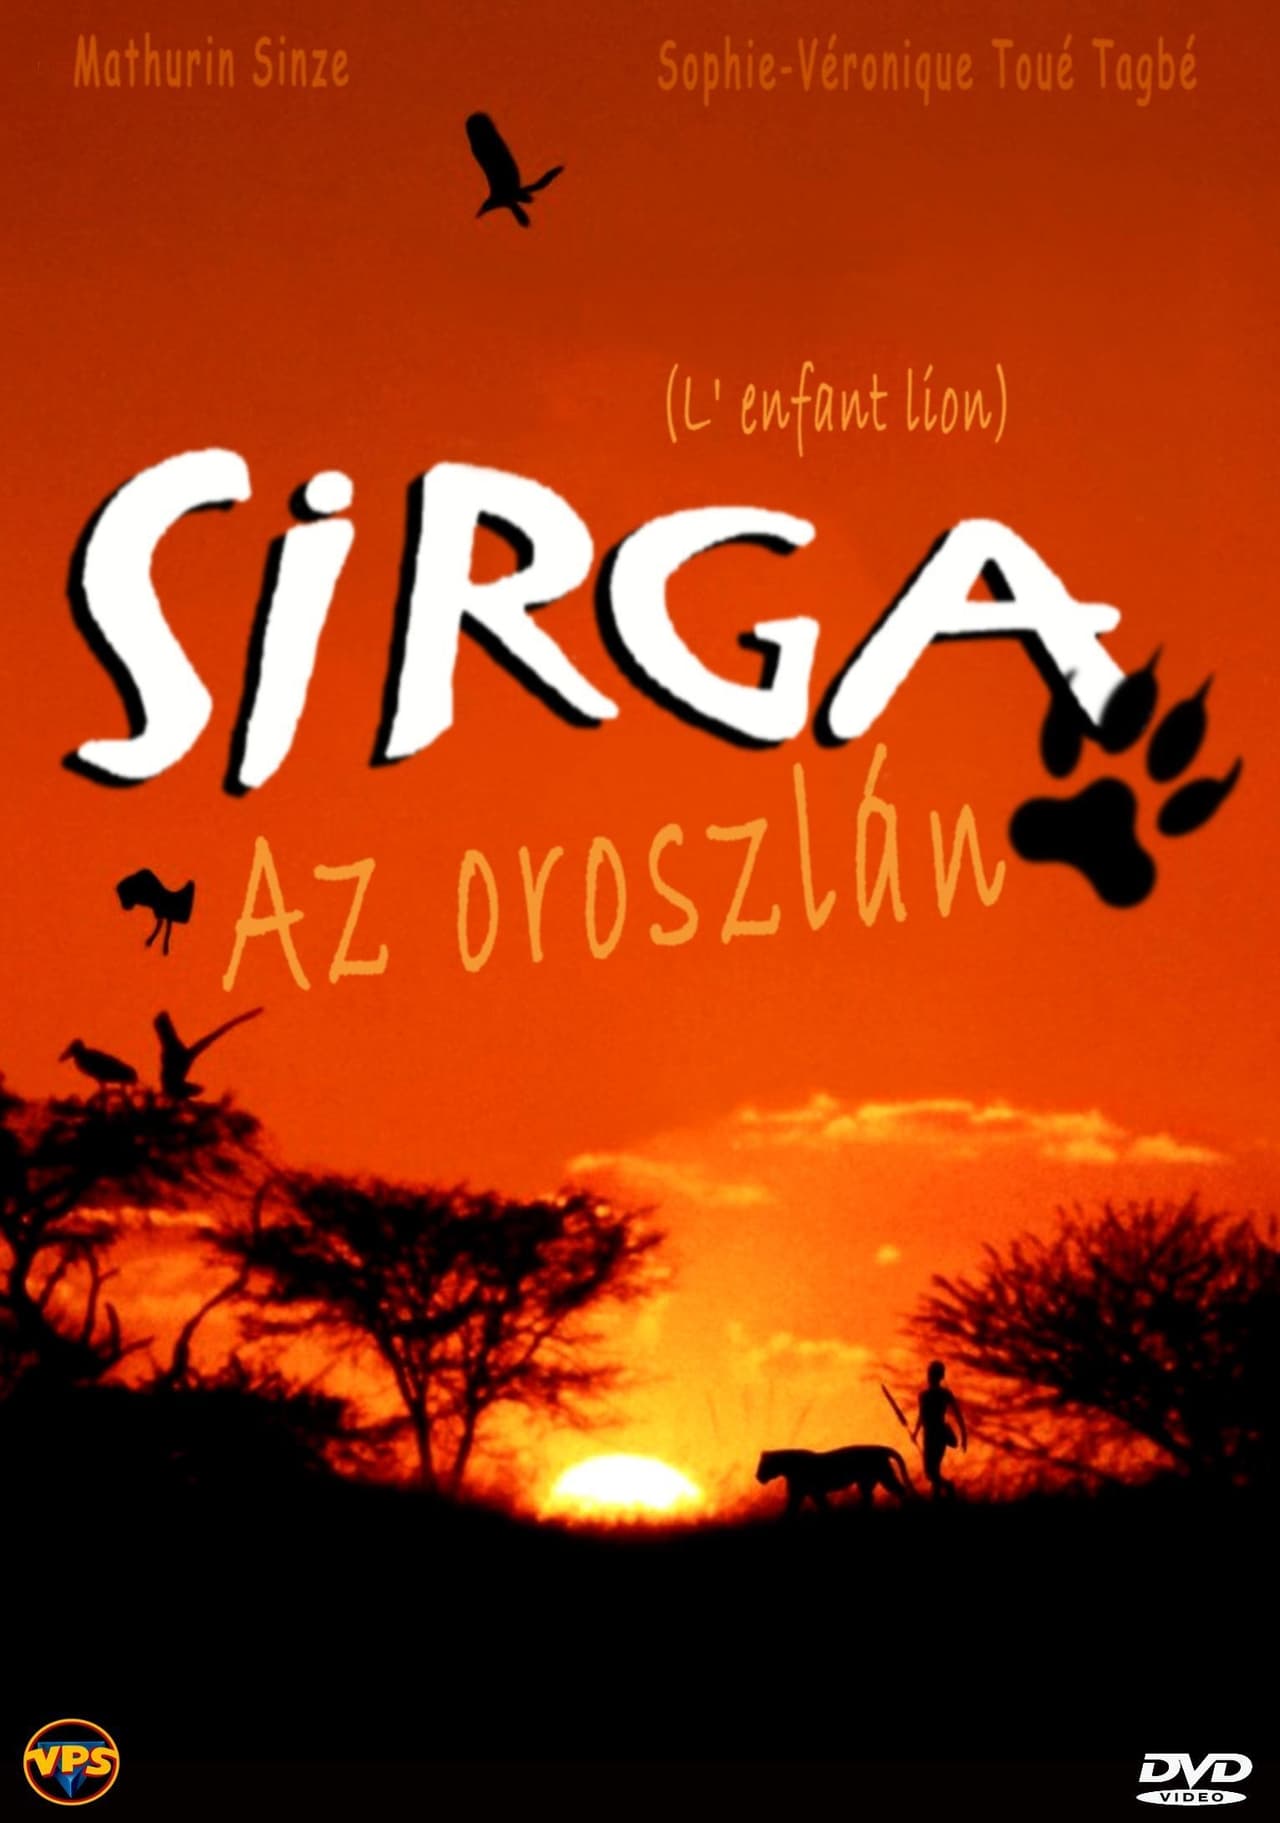 Sirga, az oroszlán (1993)